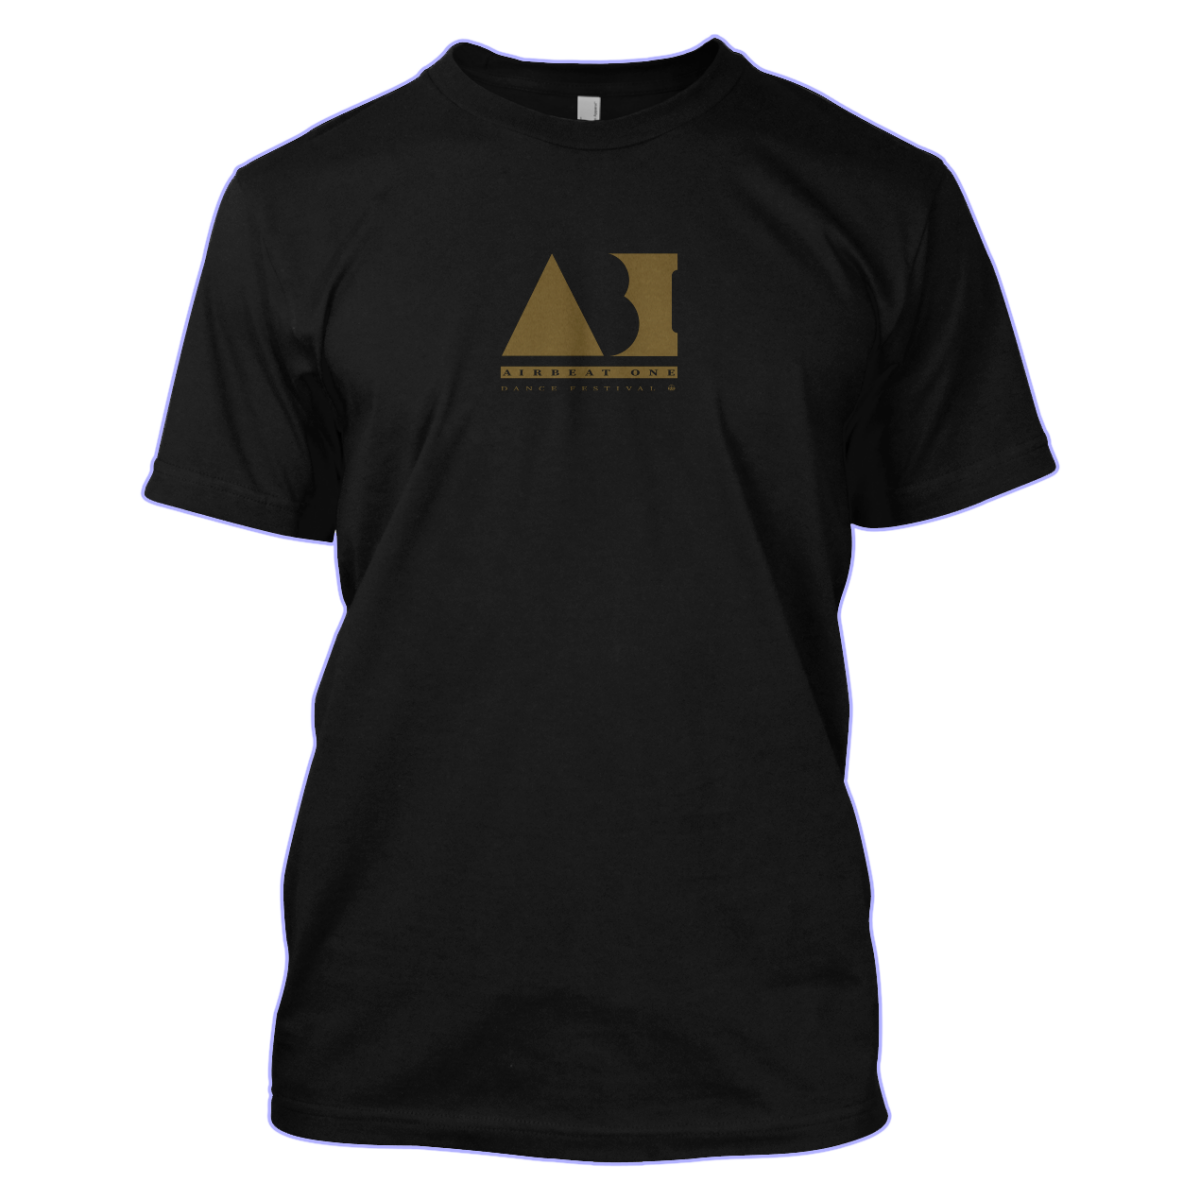 T-Shirt AB1, 20,00